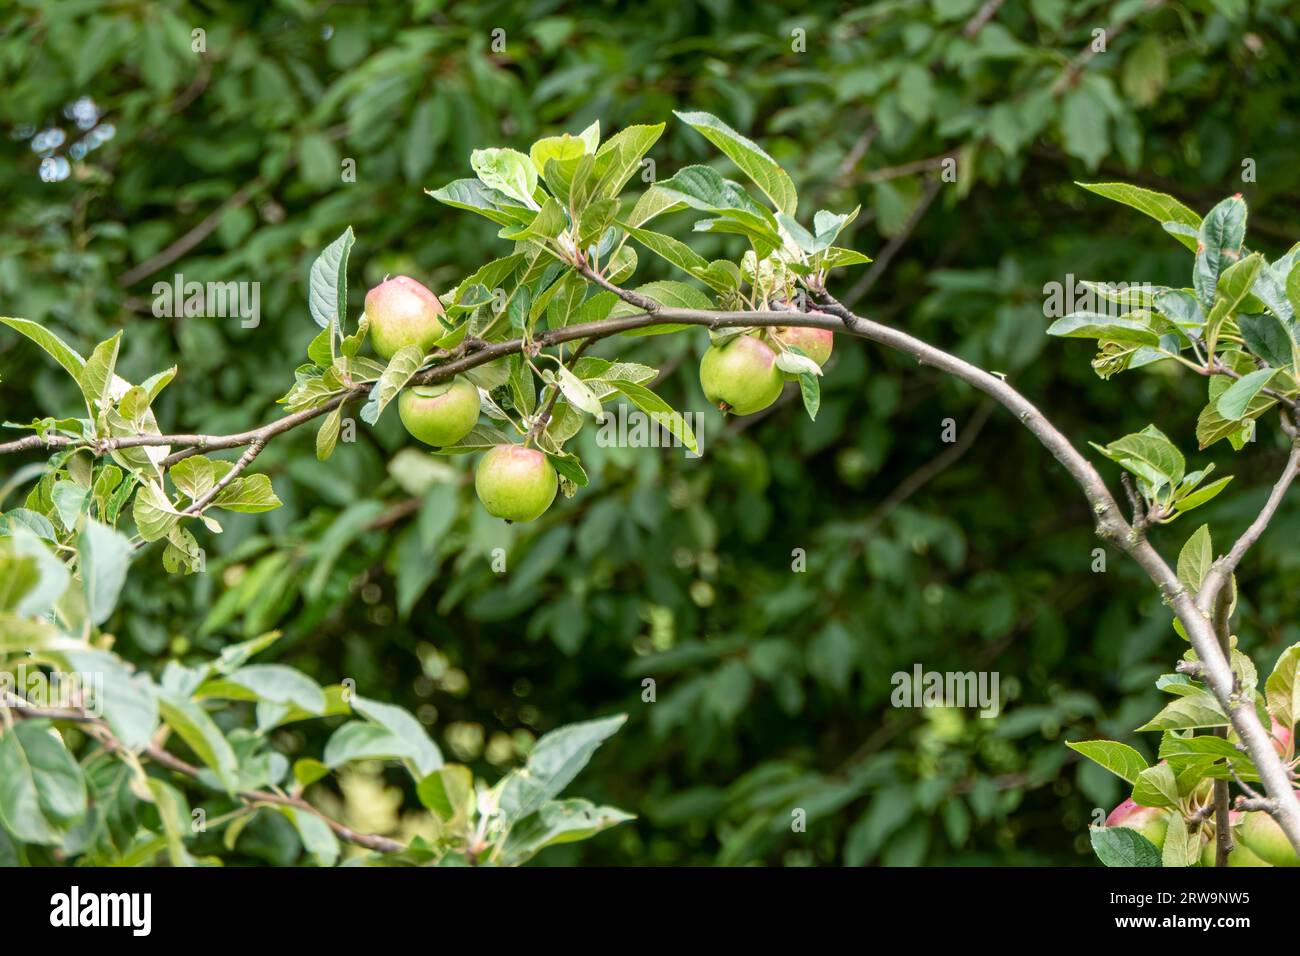 Primo piano di mele non mature appese a un ramo. Le mele sono verdi e iniziano con un colore rosso. Le foglie sono verdi e sane, e fornisce una str Foto Stock